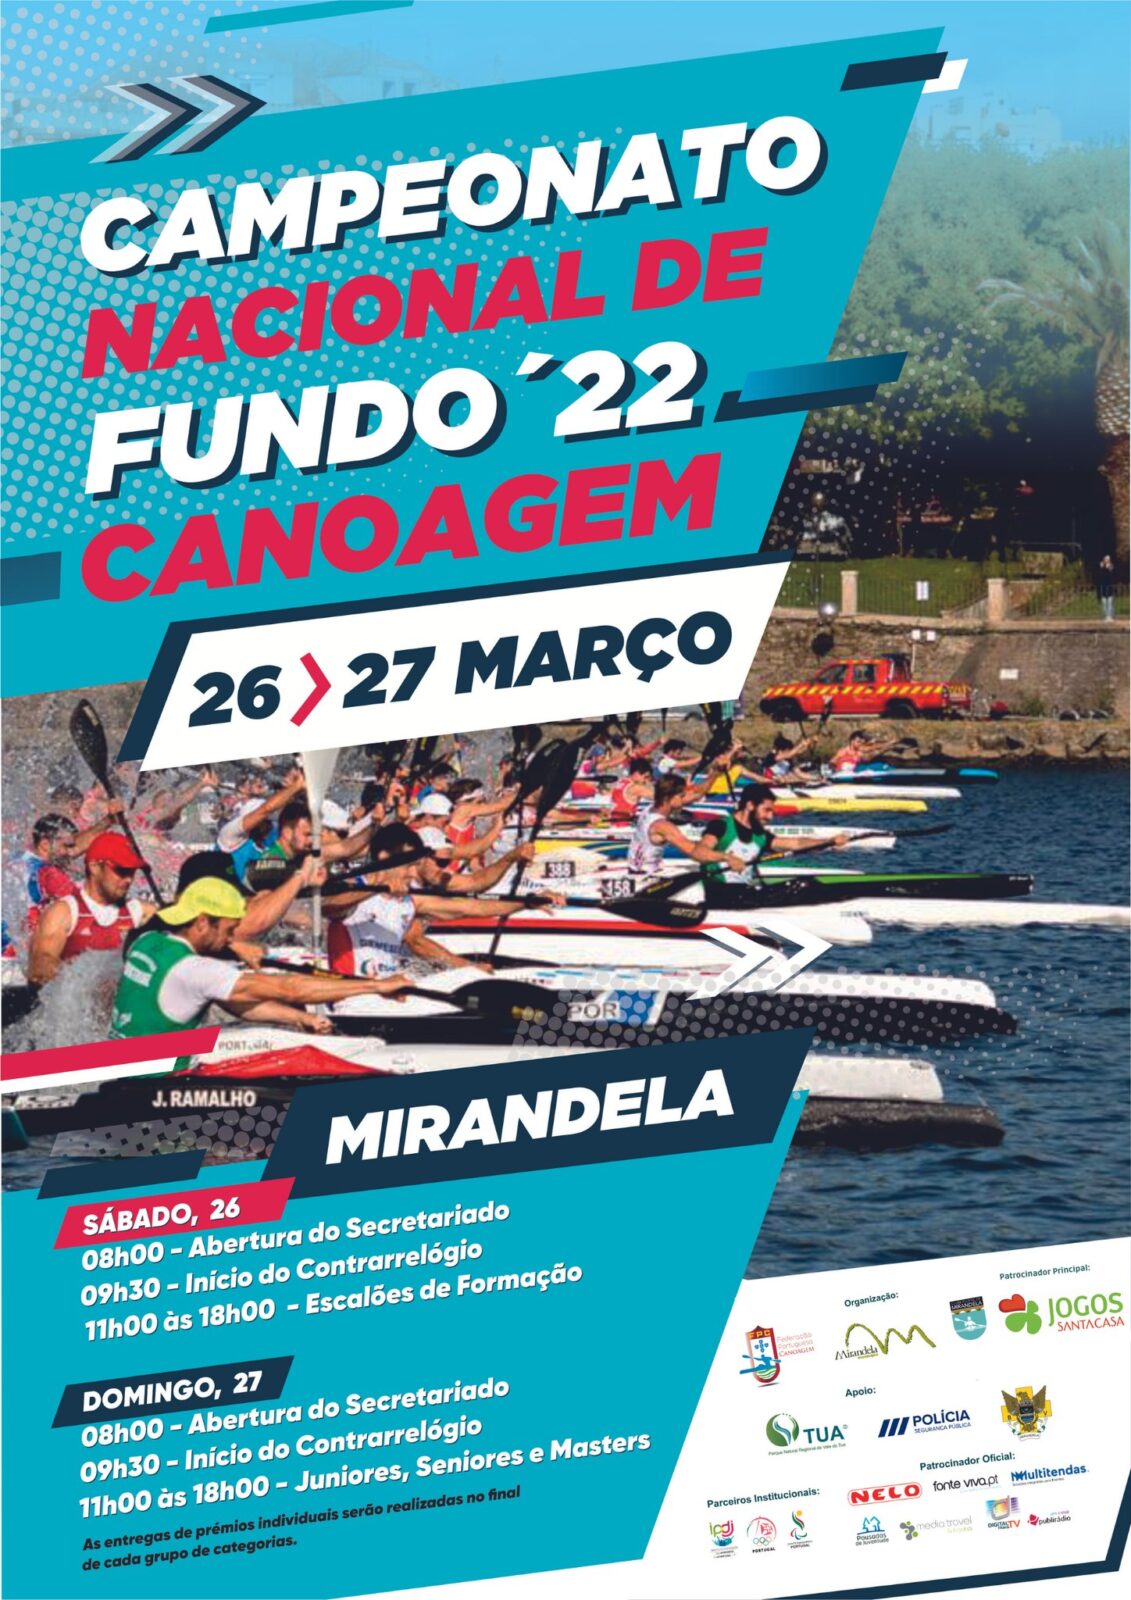 PNRVT apoia Campeonato Nacional de Canoagem que decorre a 26 e 27 de março em Mirandela